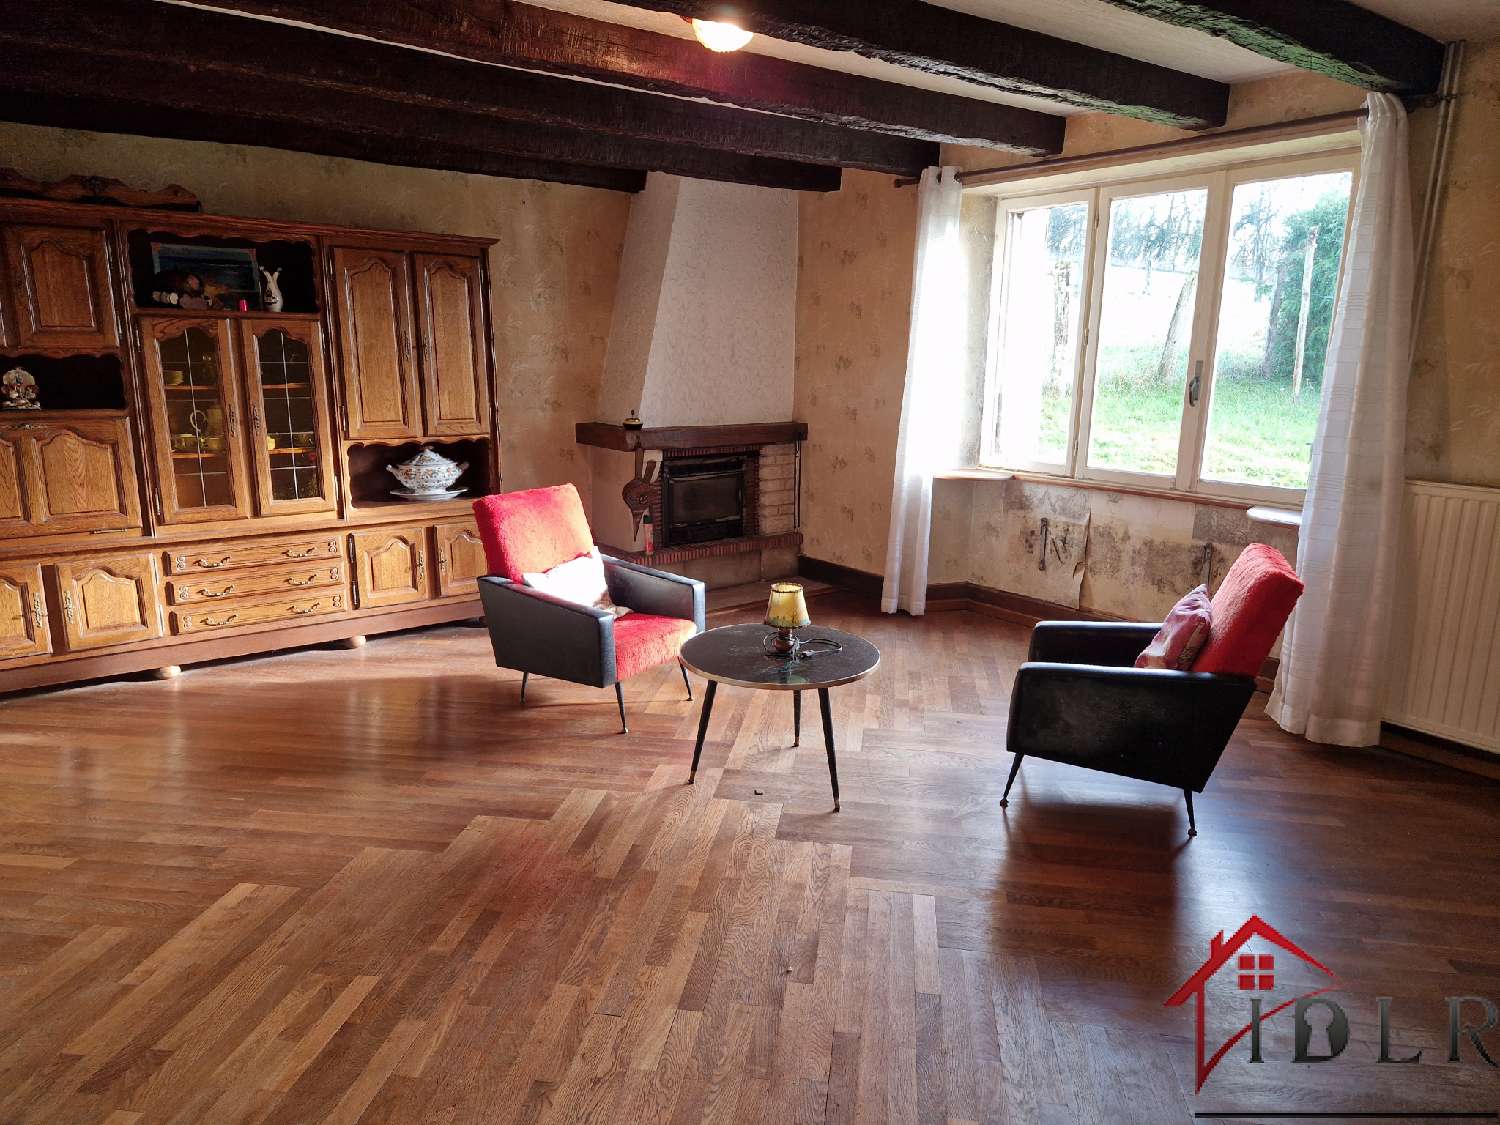  à vendre maison de village Arbigny-sous-Varennes Haute-Marne 5